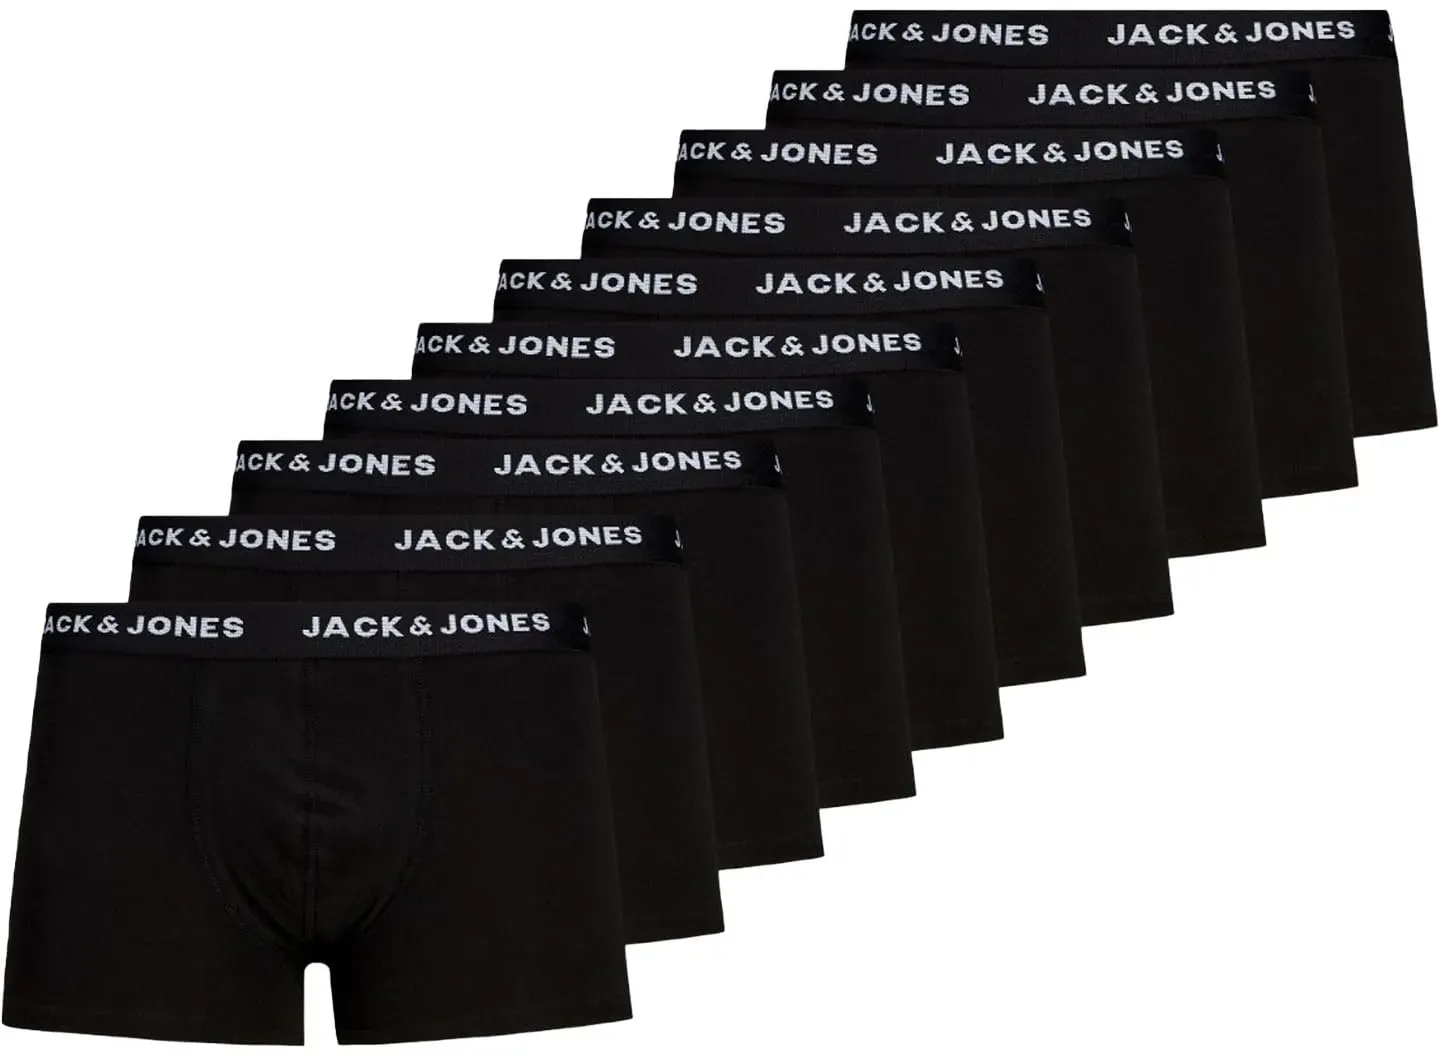 Jack & Jones Herren Jacsolid Trunks 10 Packs Boxershorts, Schwarz, L EU